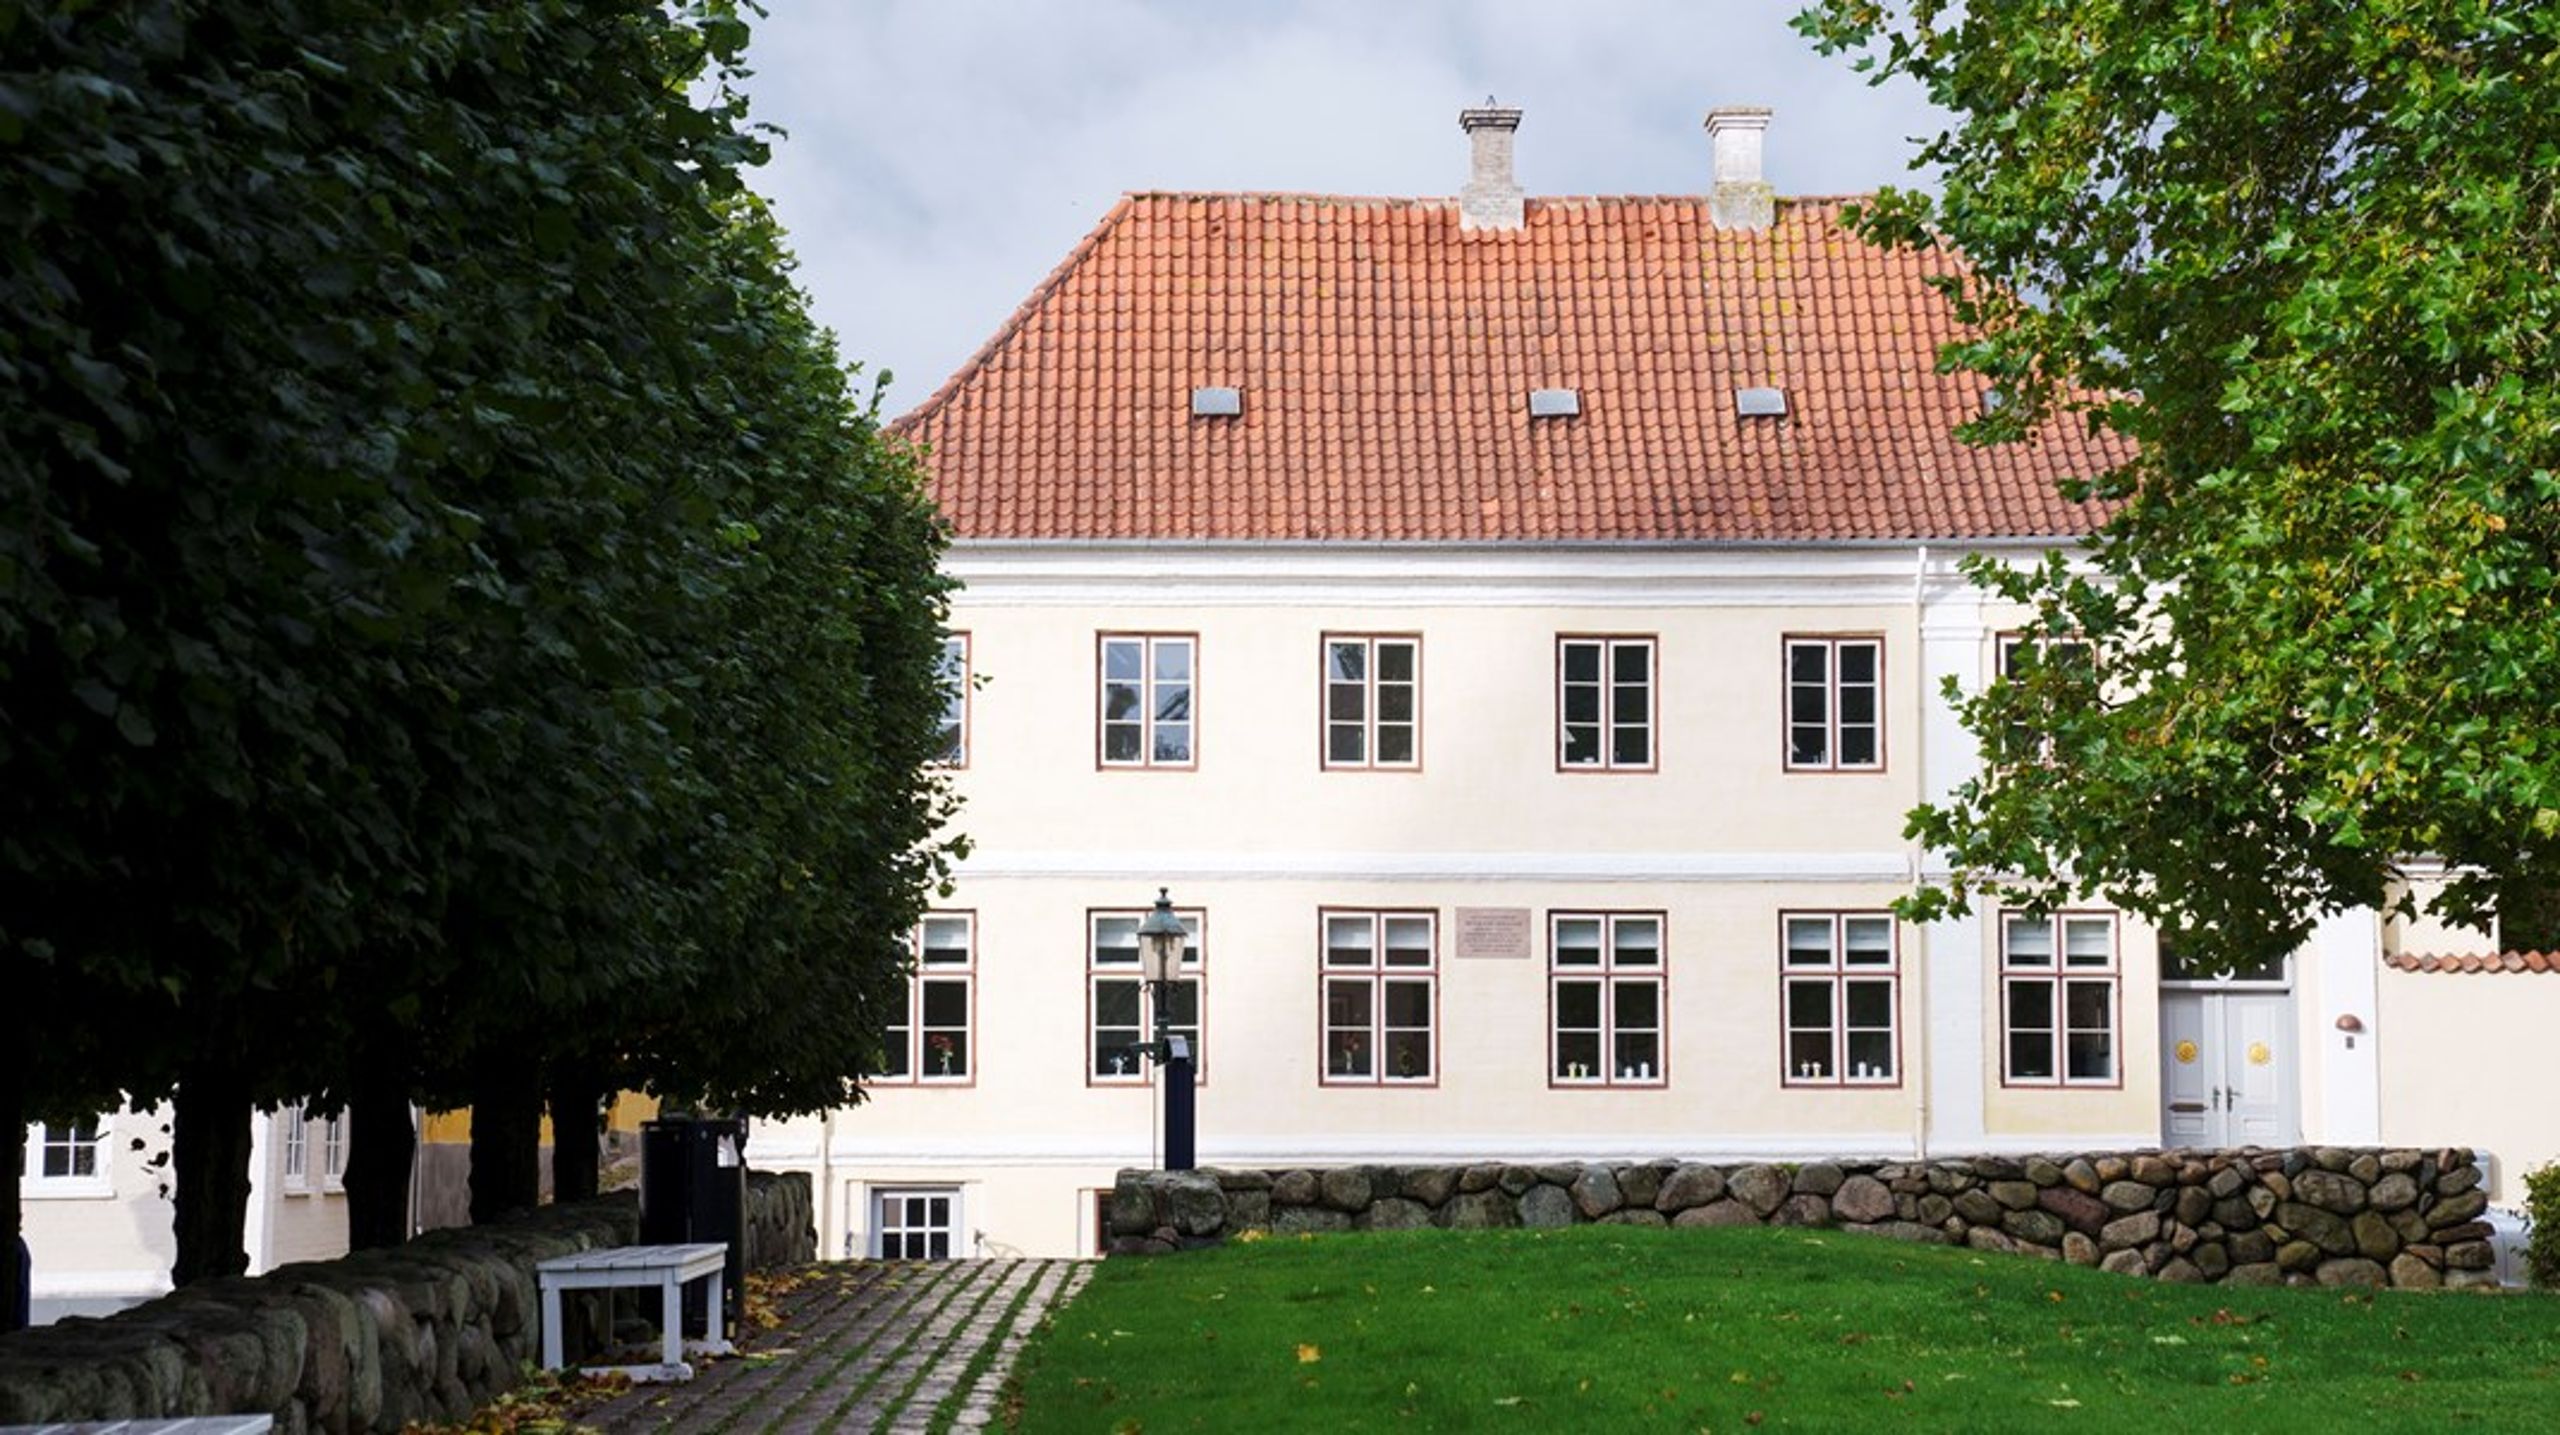 Den sidste generalguvernør over Dansk Vestindien, Peter von Scholten, boede i boligen på billedet.